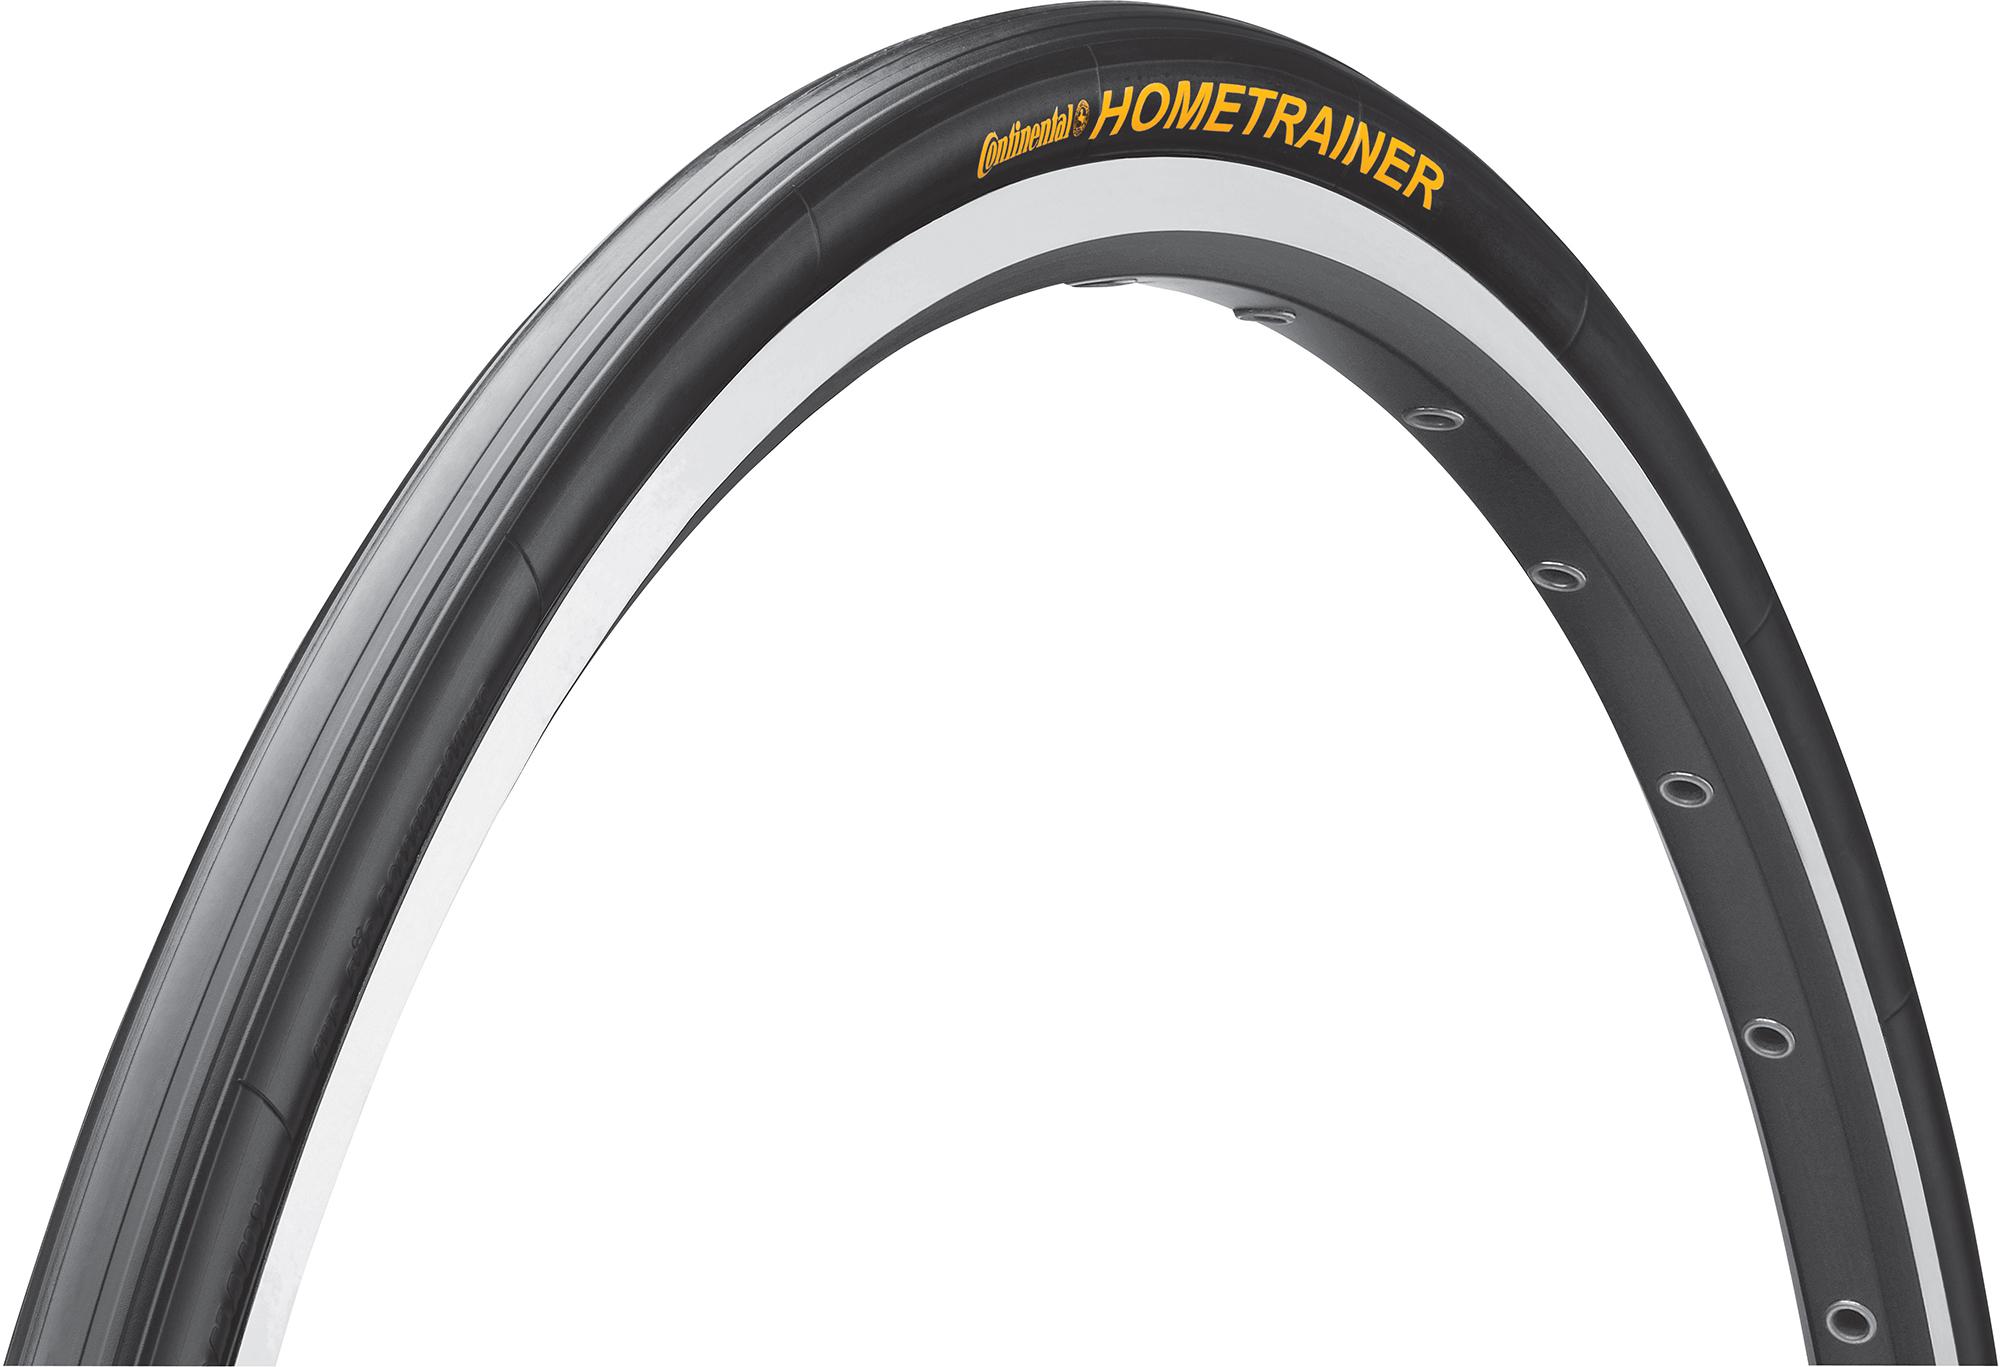 Continental Hometrainer Ii Road Trainer Tyre - Black